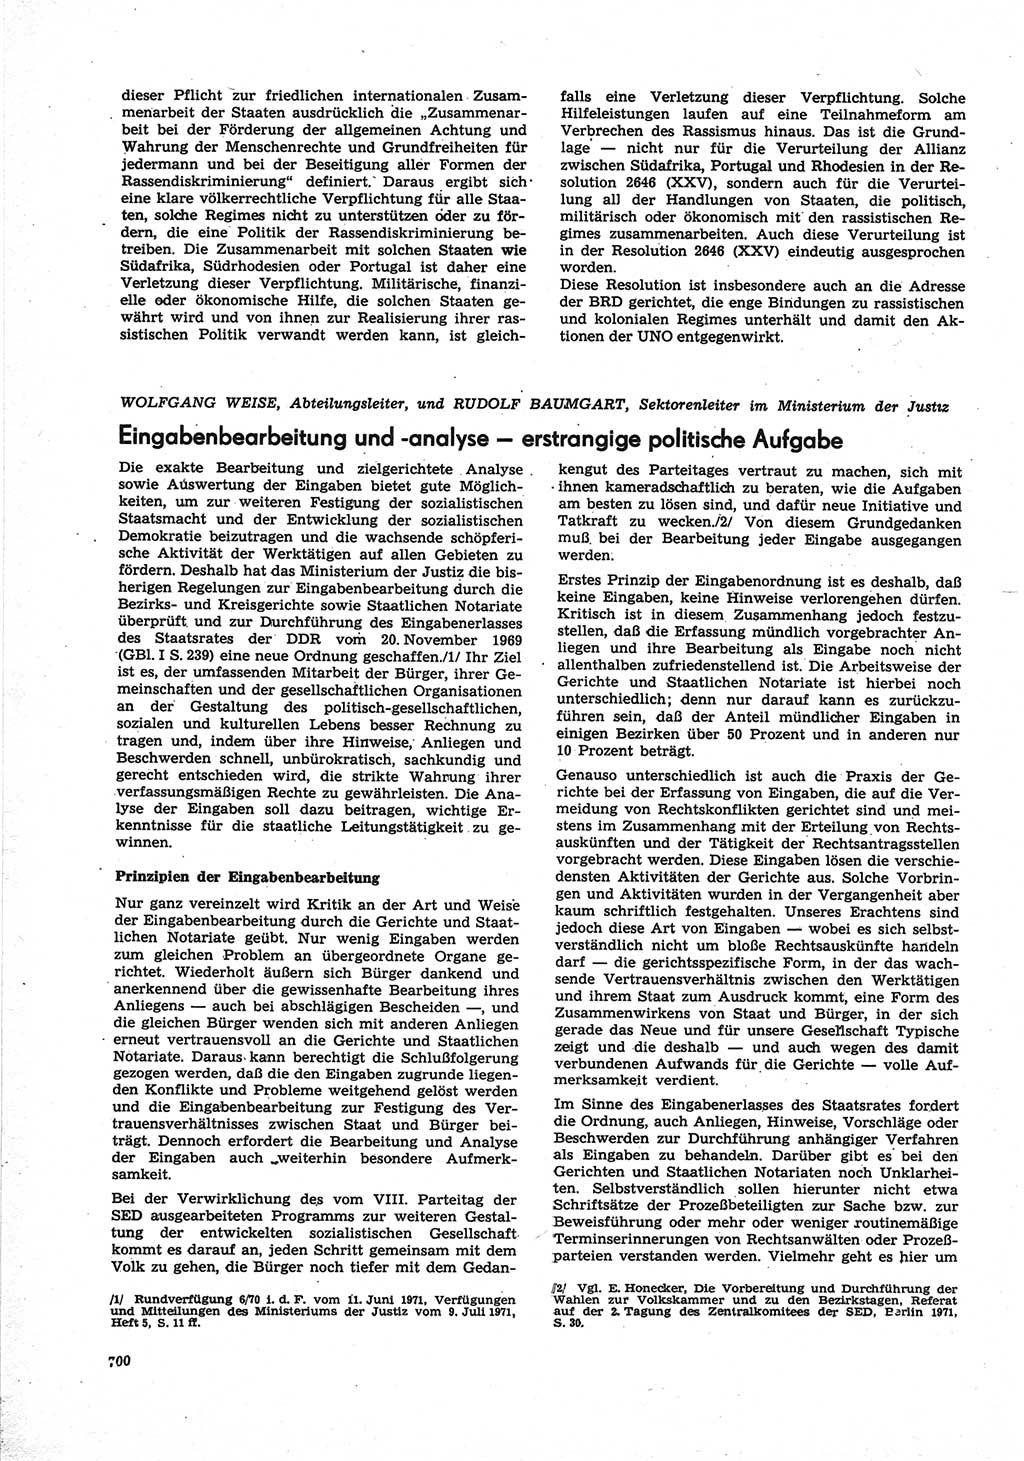 Neue Justiz (NJ), Zeitschrift für Recht und Rechtswissenschaft [Deutsche Demokratische Republik (DDR)], 25. Jahrgang 1971, Seite 700 (NJ DDR 1971, S. 700)